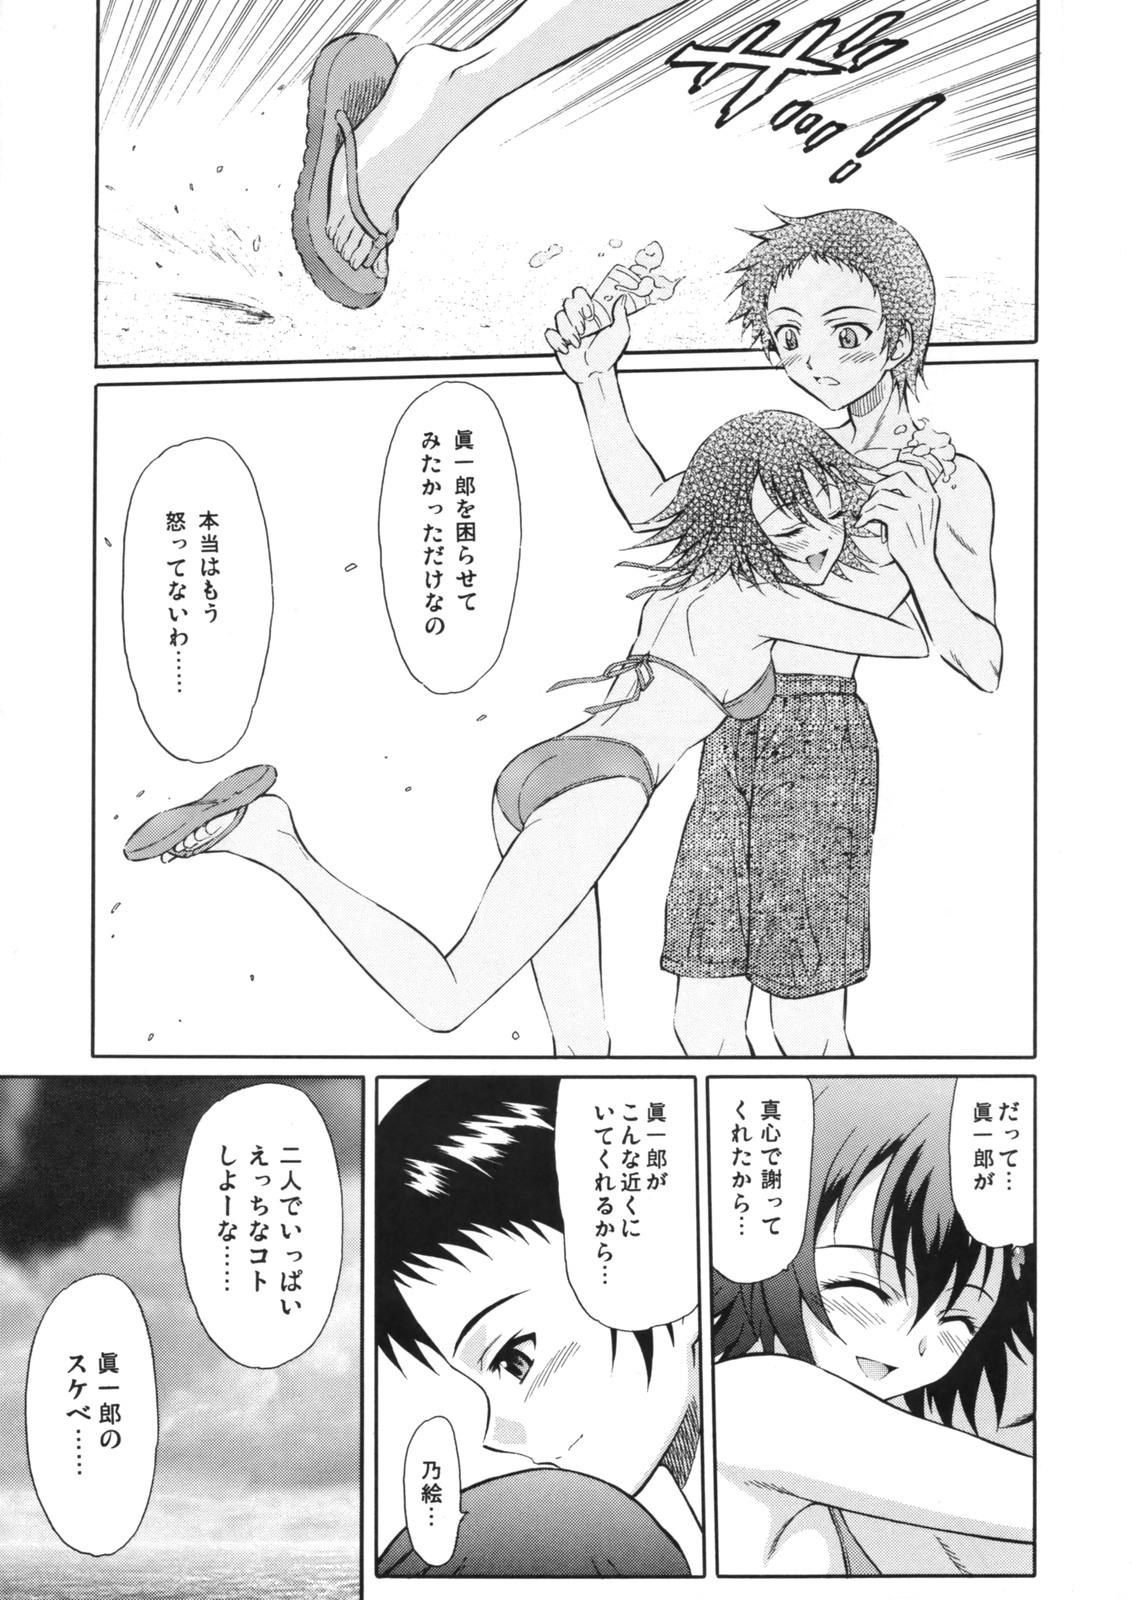 Con Tenshi no Namida 2 - True tears Play - Page 4